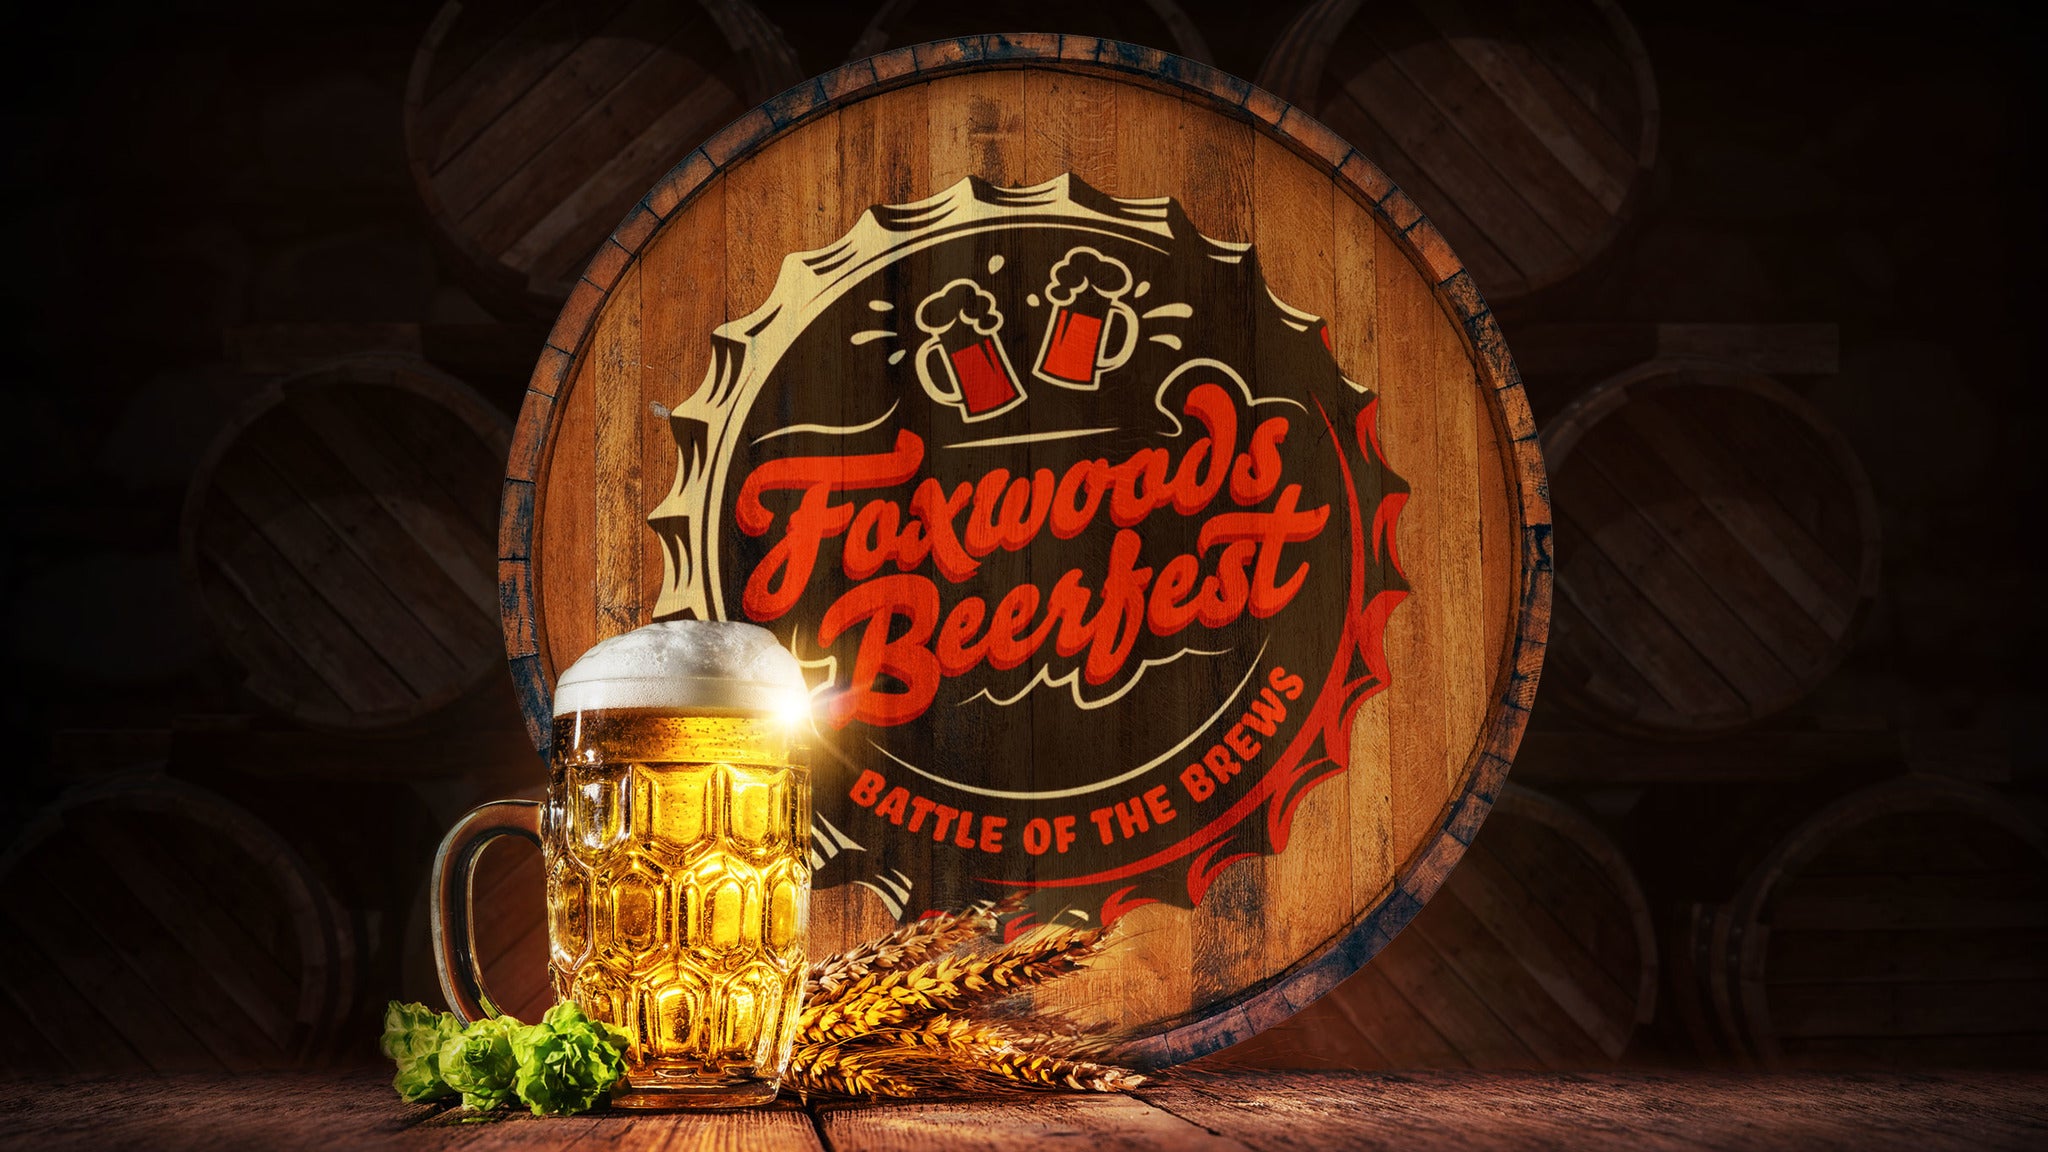 Foxwoods Beerfest presale information on freepresalepasswords.com